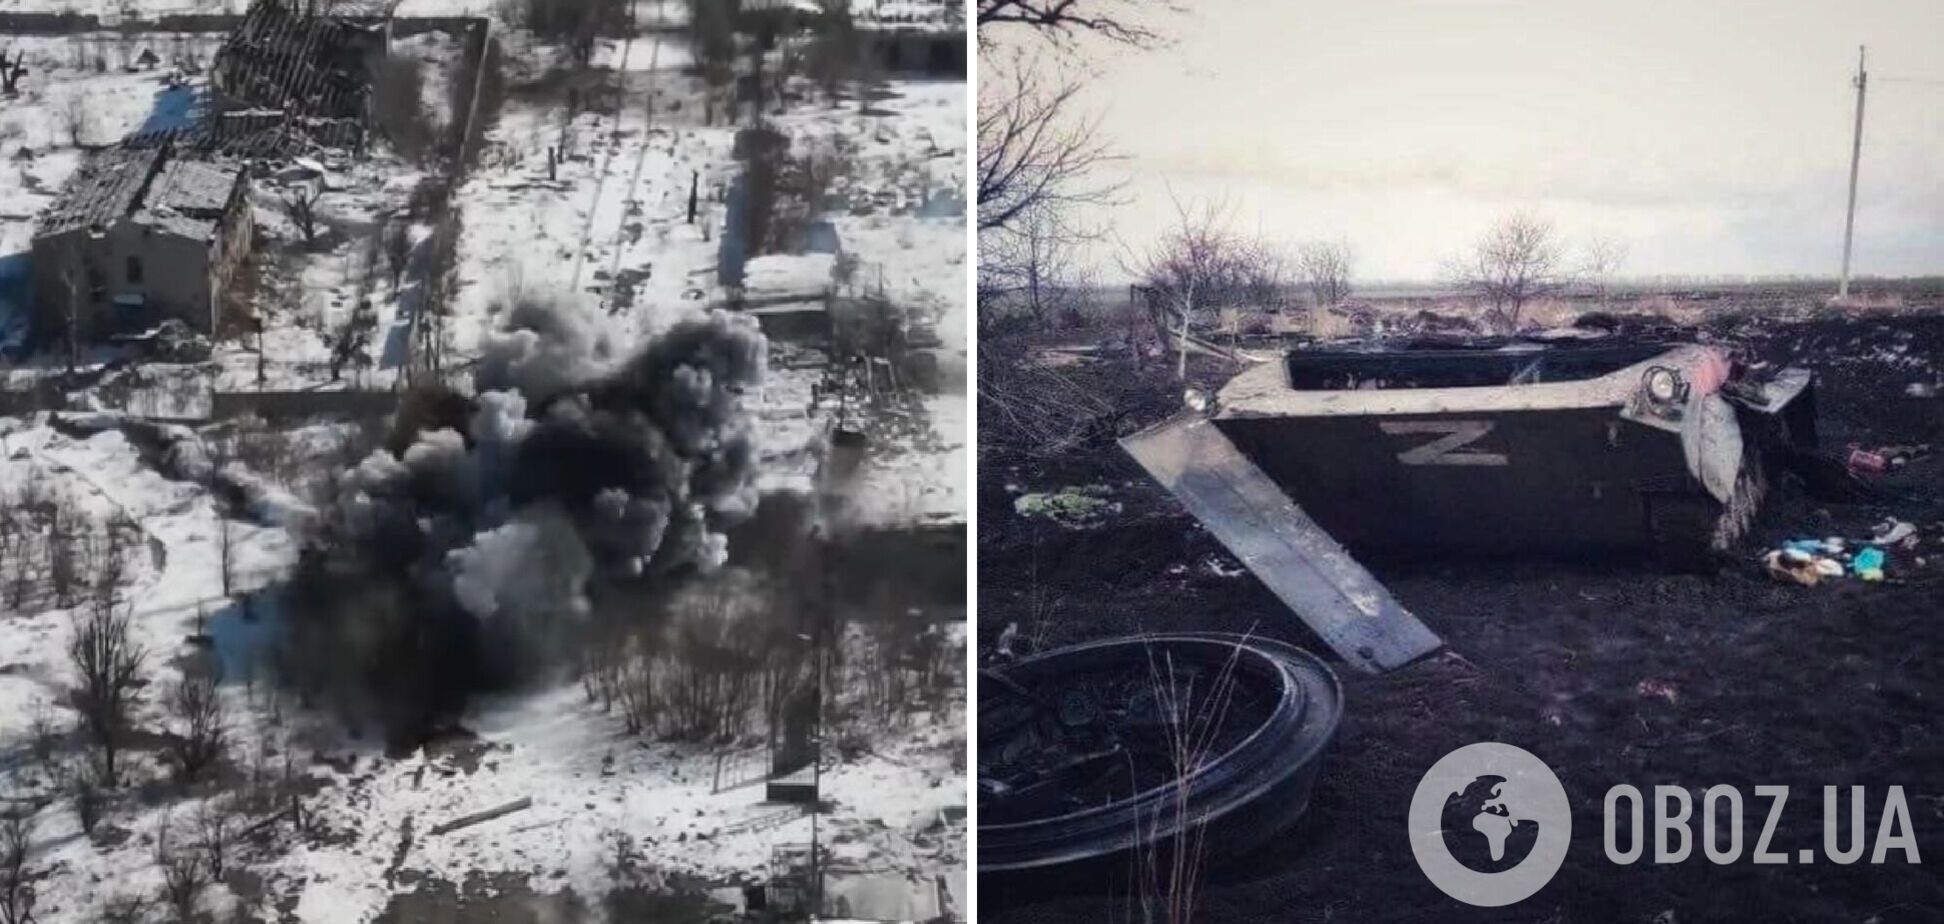 Game over: украинские десантники сняли с высоты разгромный удар по танку РФ. Видео